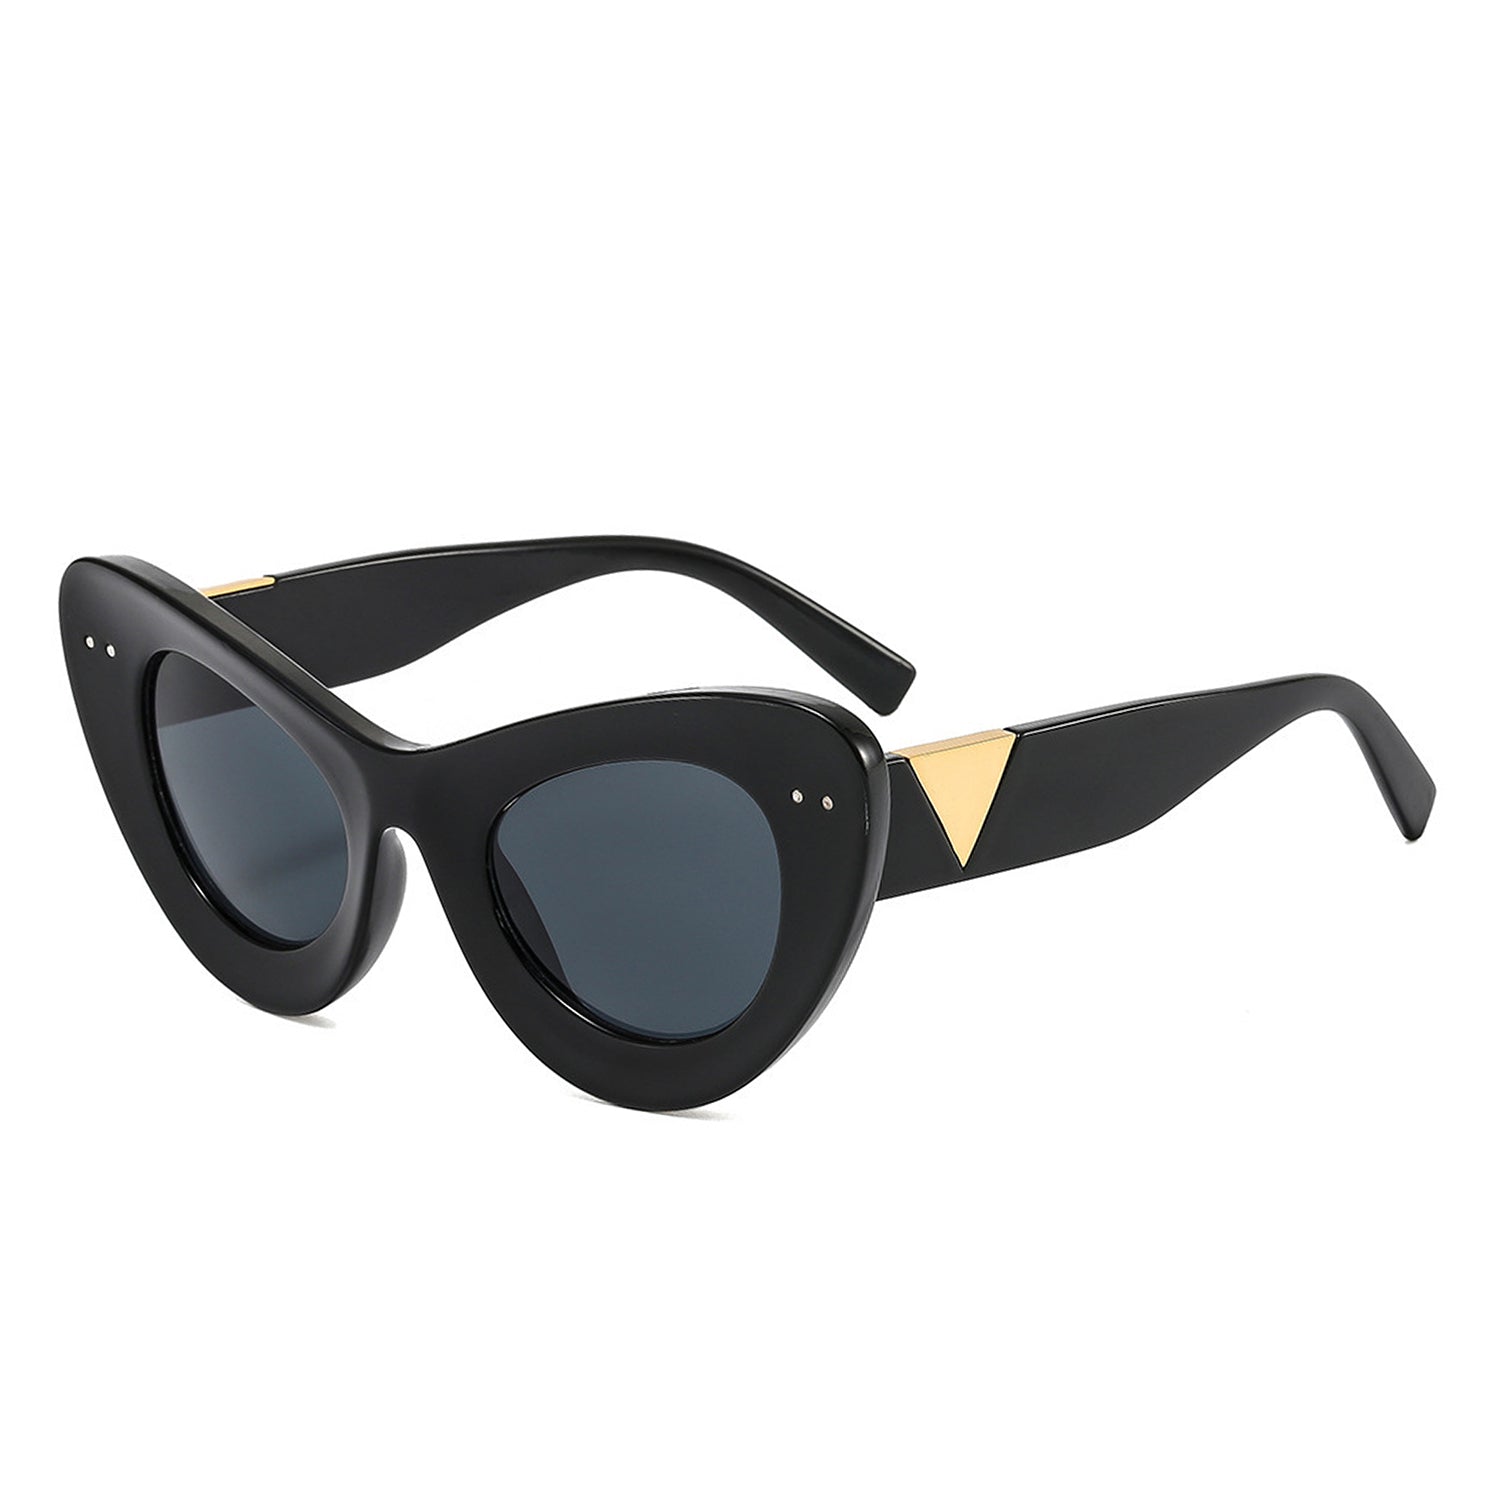 Luminara Women's Fashion Retro Round Cat Eye Sunglasses